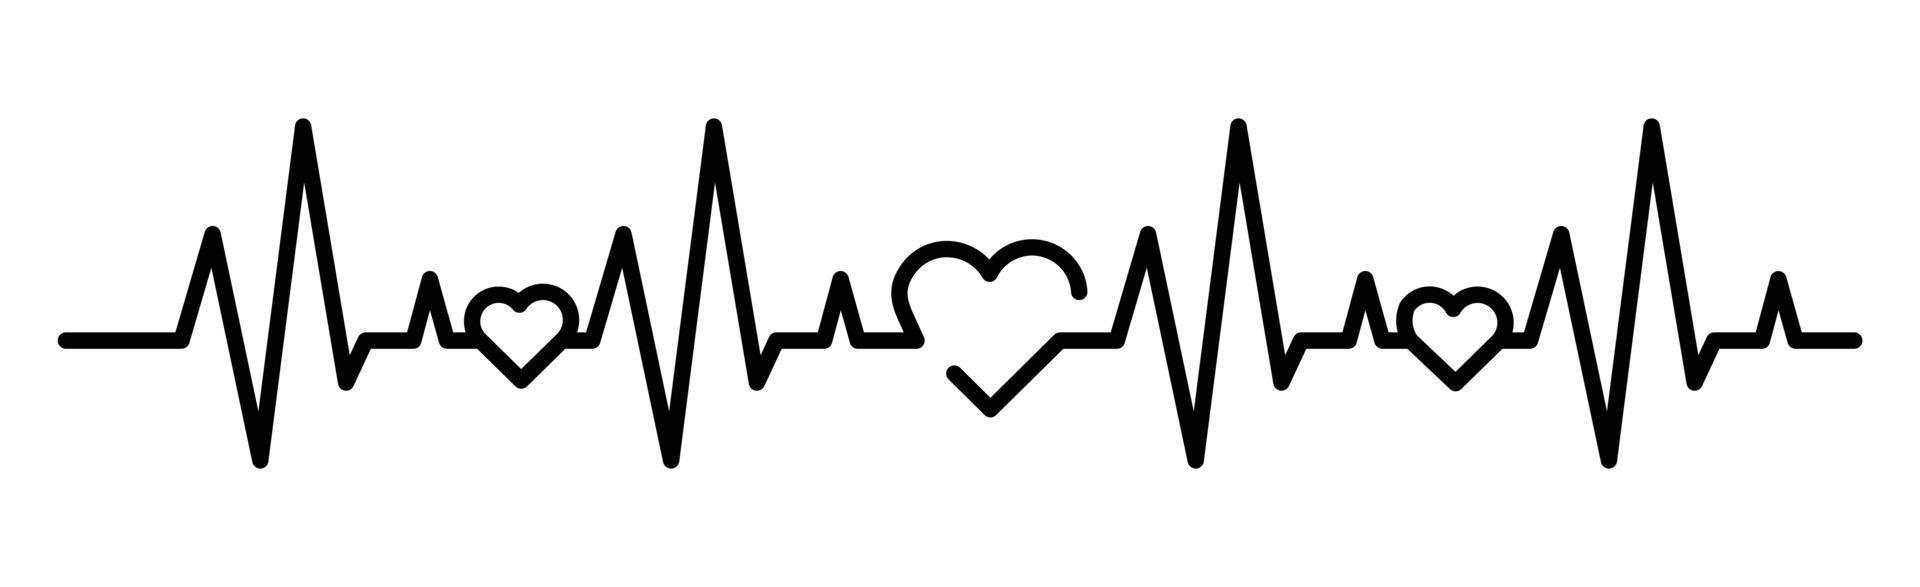 ilustração em vetor ícone de linha de batimento cardíaco, conjunto de ícone de batimento cardíaco no logotipo do coração do cardiograma símbolo